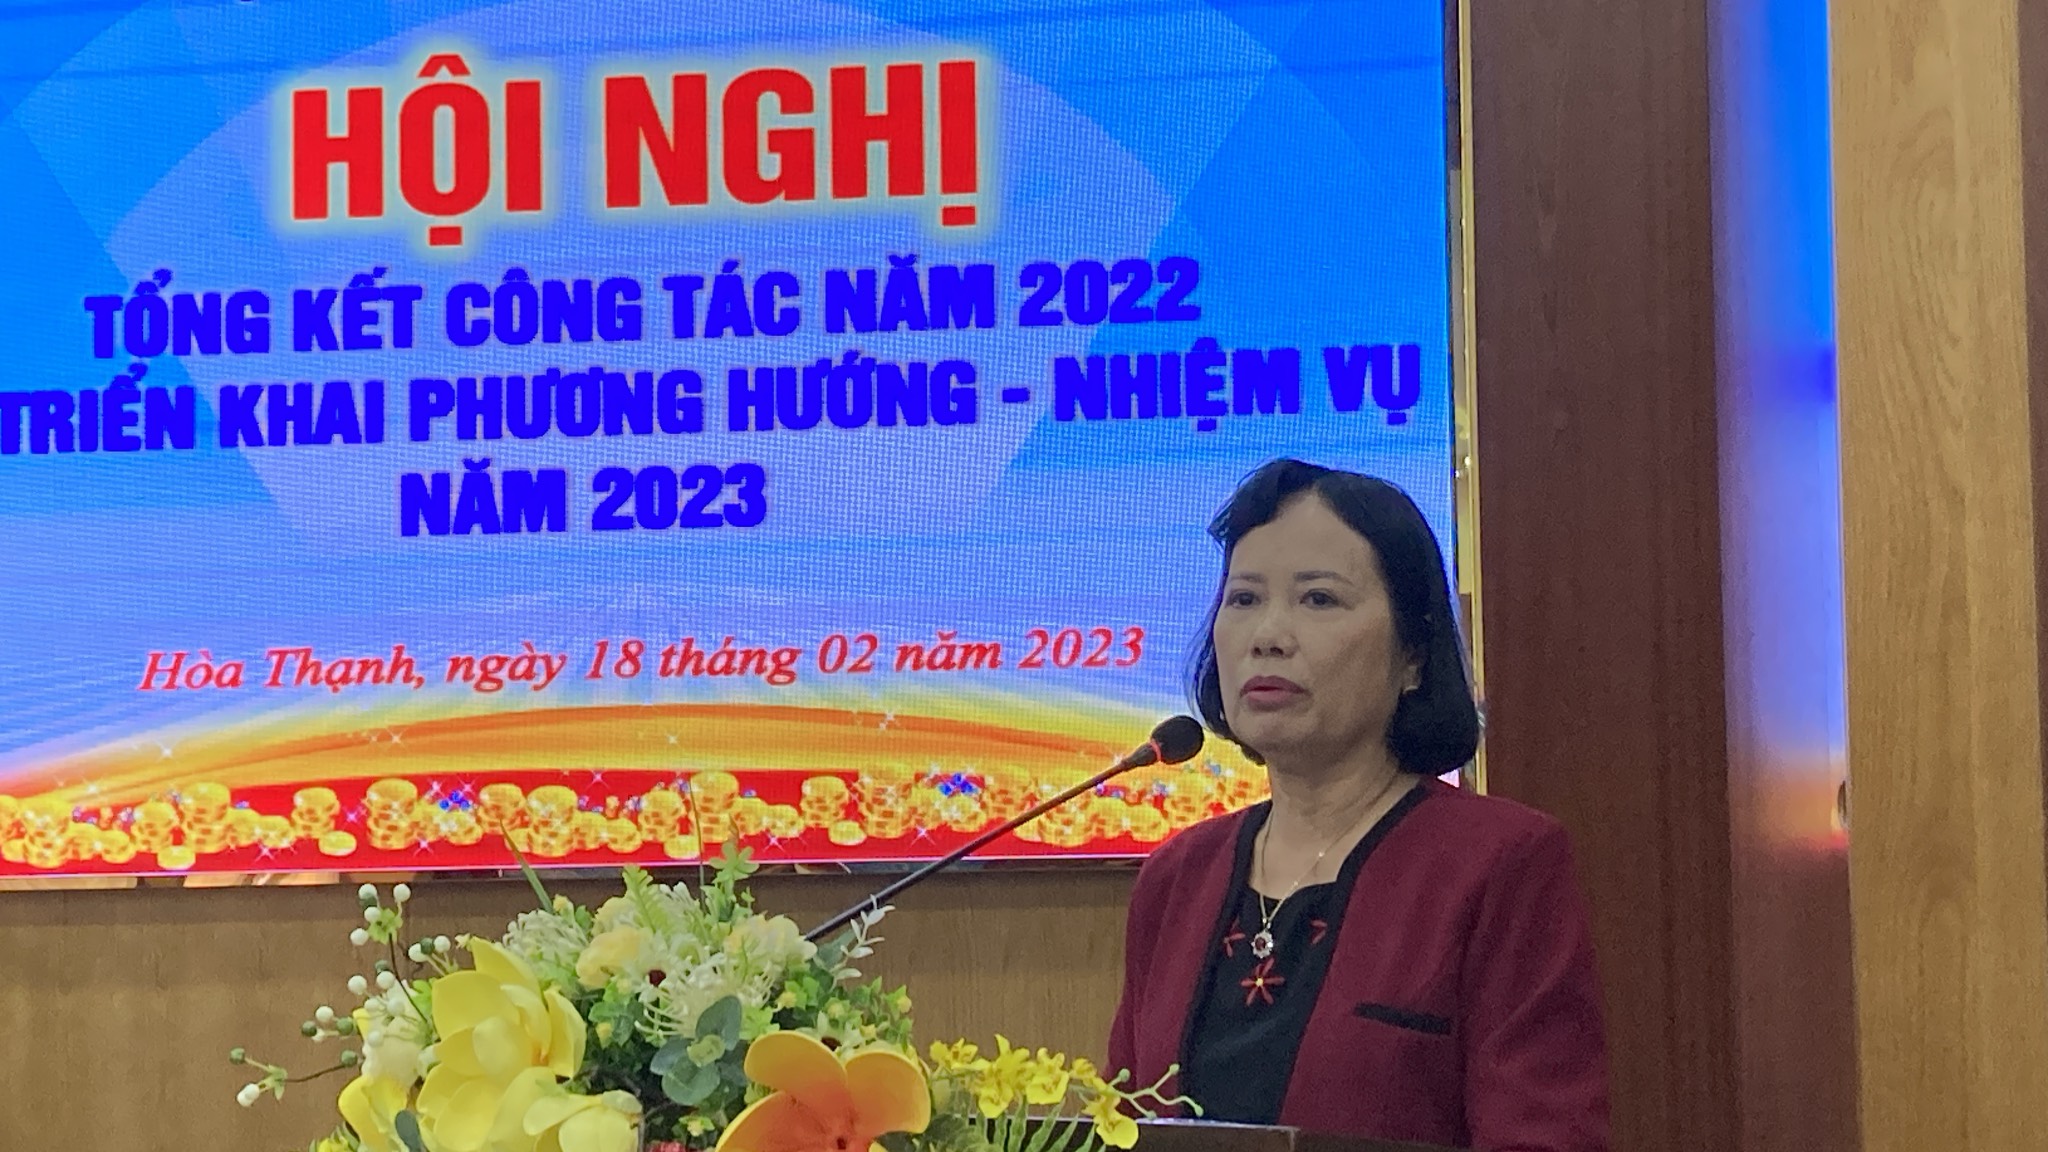 Hội Luật gia quận Tân Phú tổng kết công tác hội năm 2022